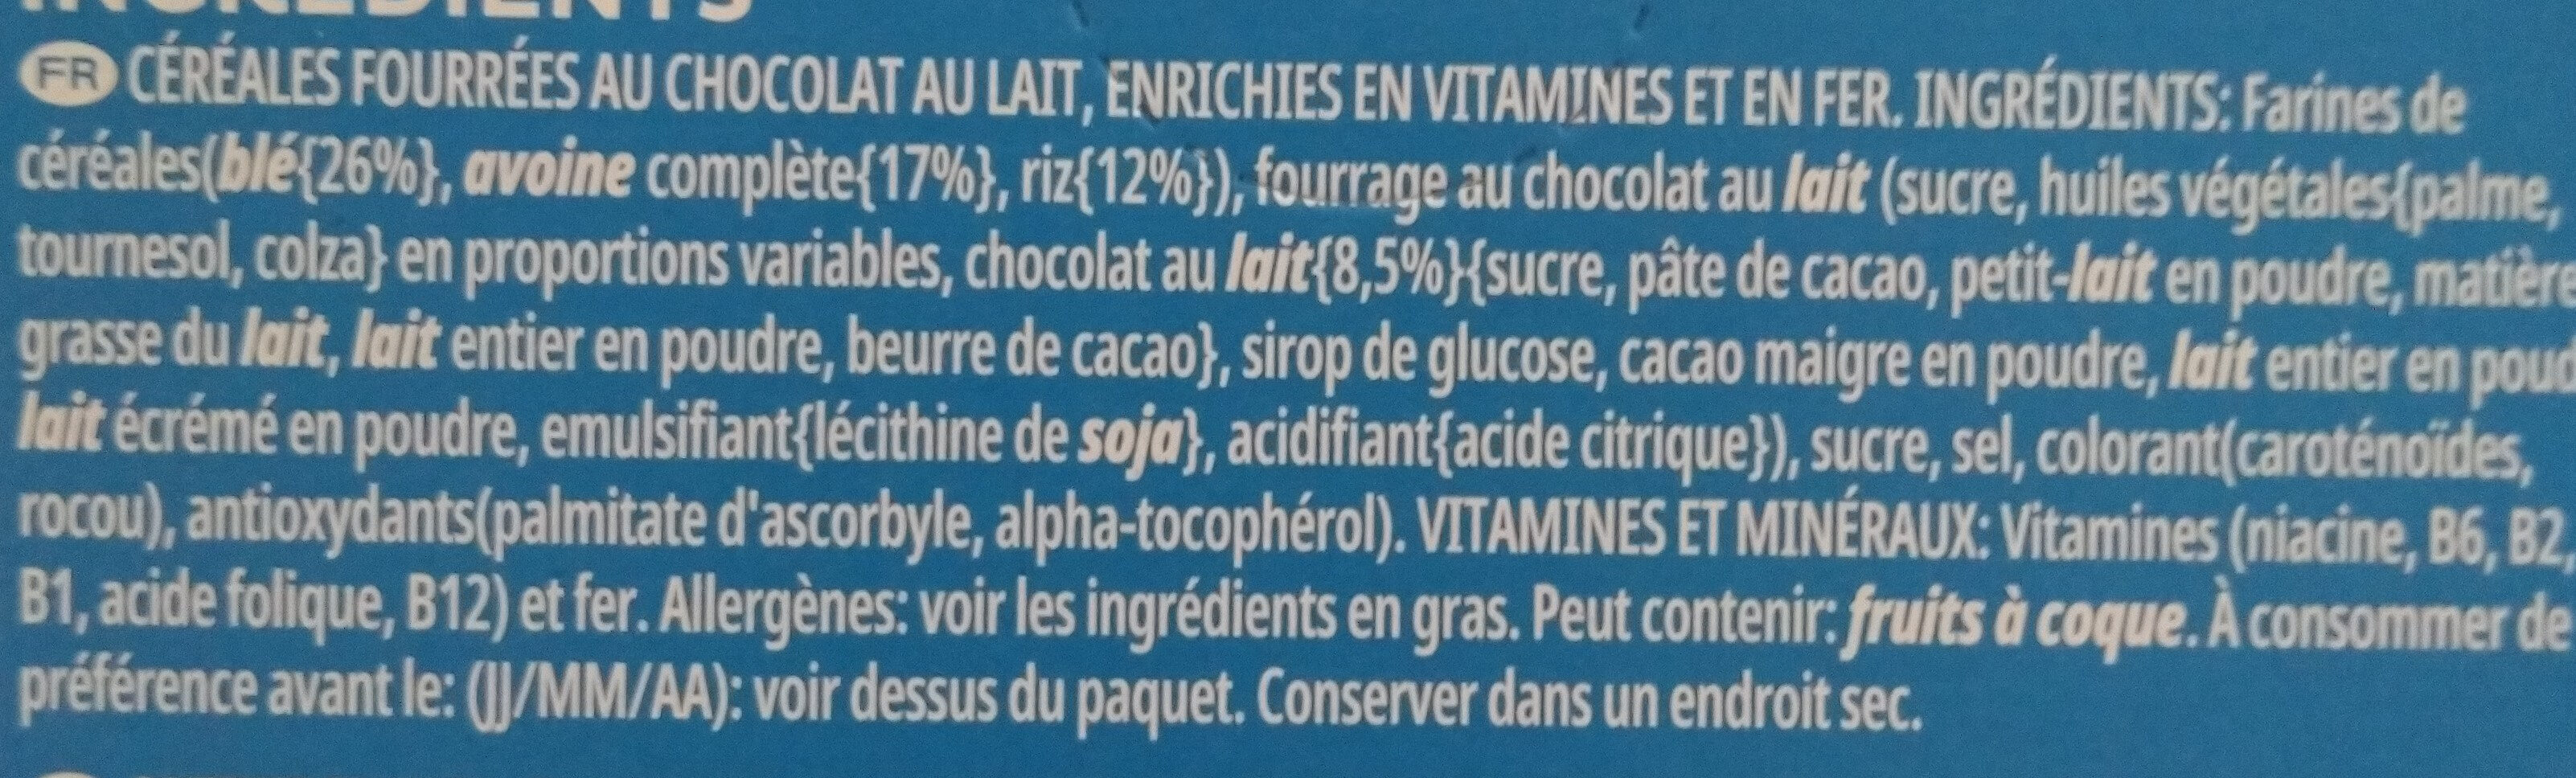 Céréales Trésor Variety Kellogg's - 6x30g - Ingrediënten - fr